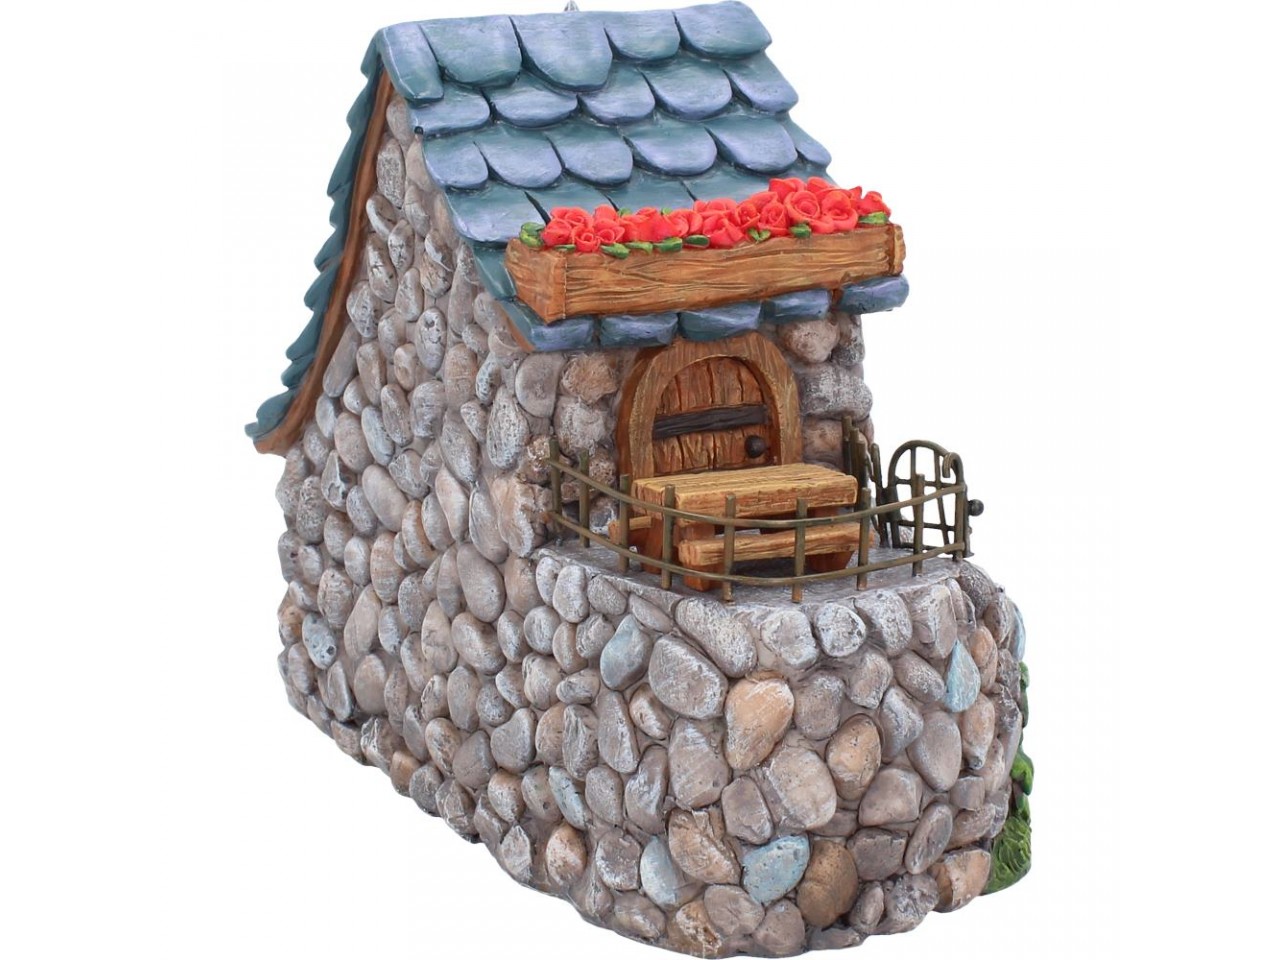 Fairy Tavern Garden Miniature